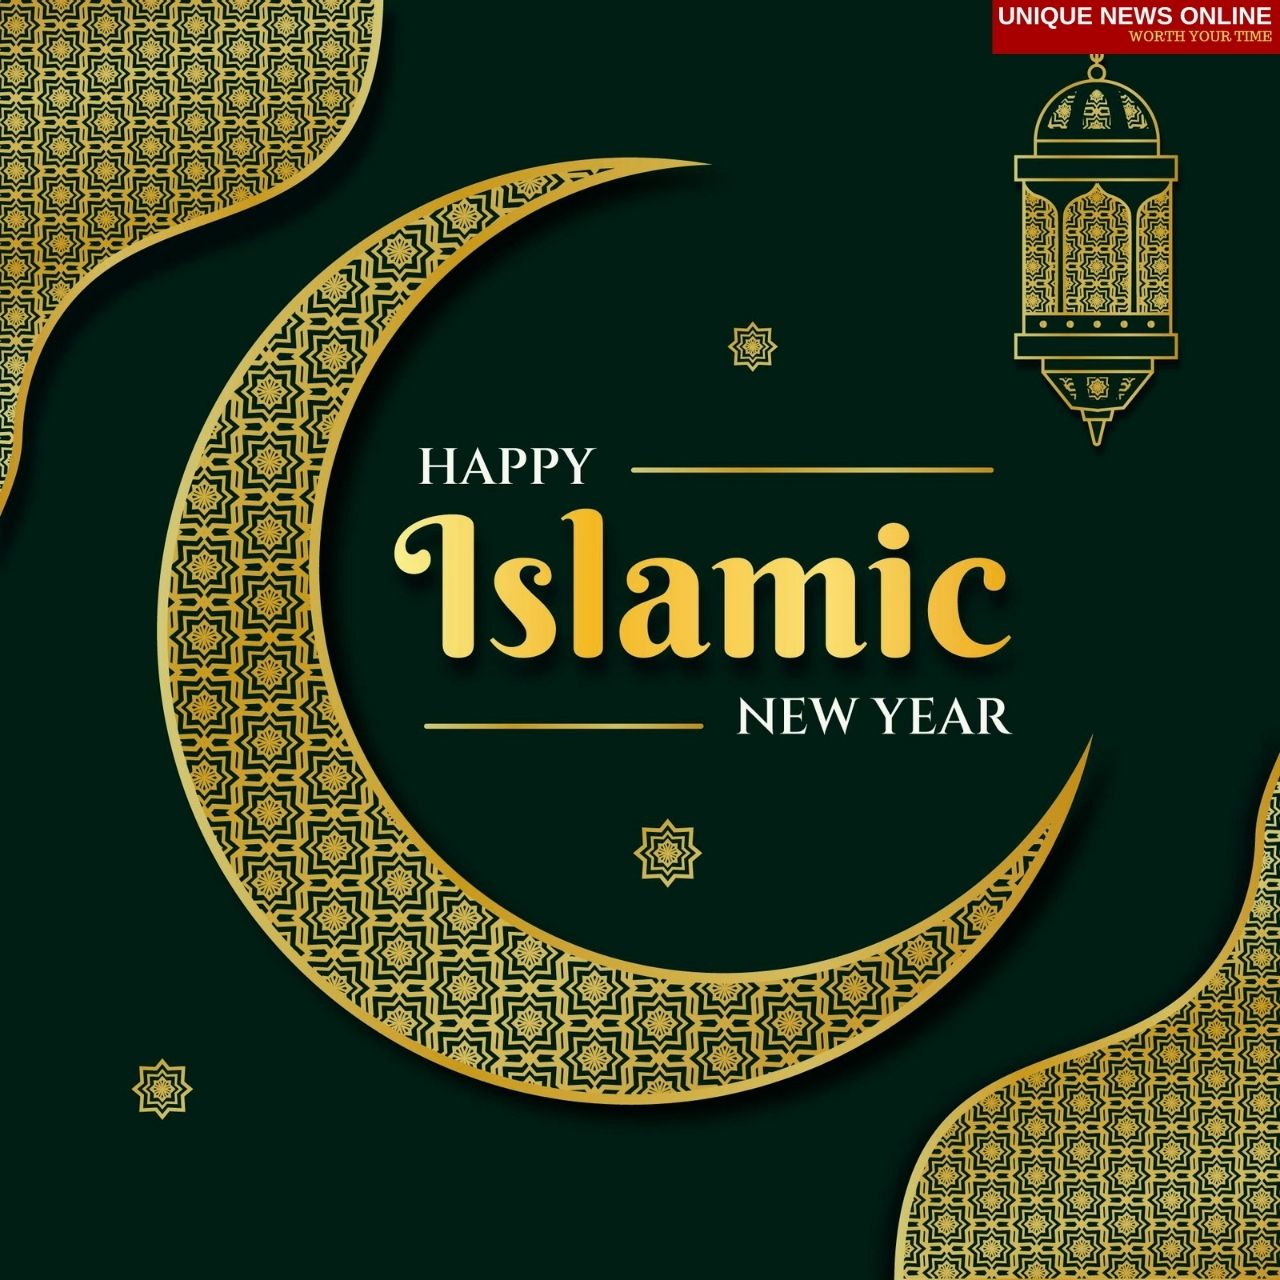 Islamic New Year 2021 WhatsApp Status Video to Download